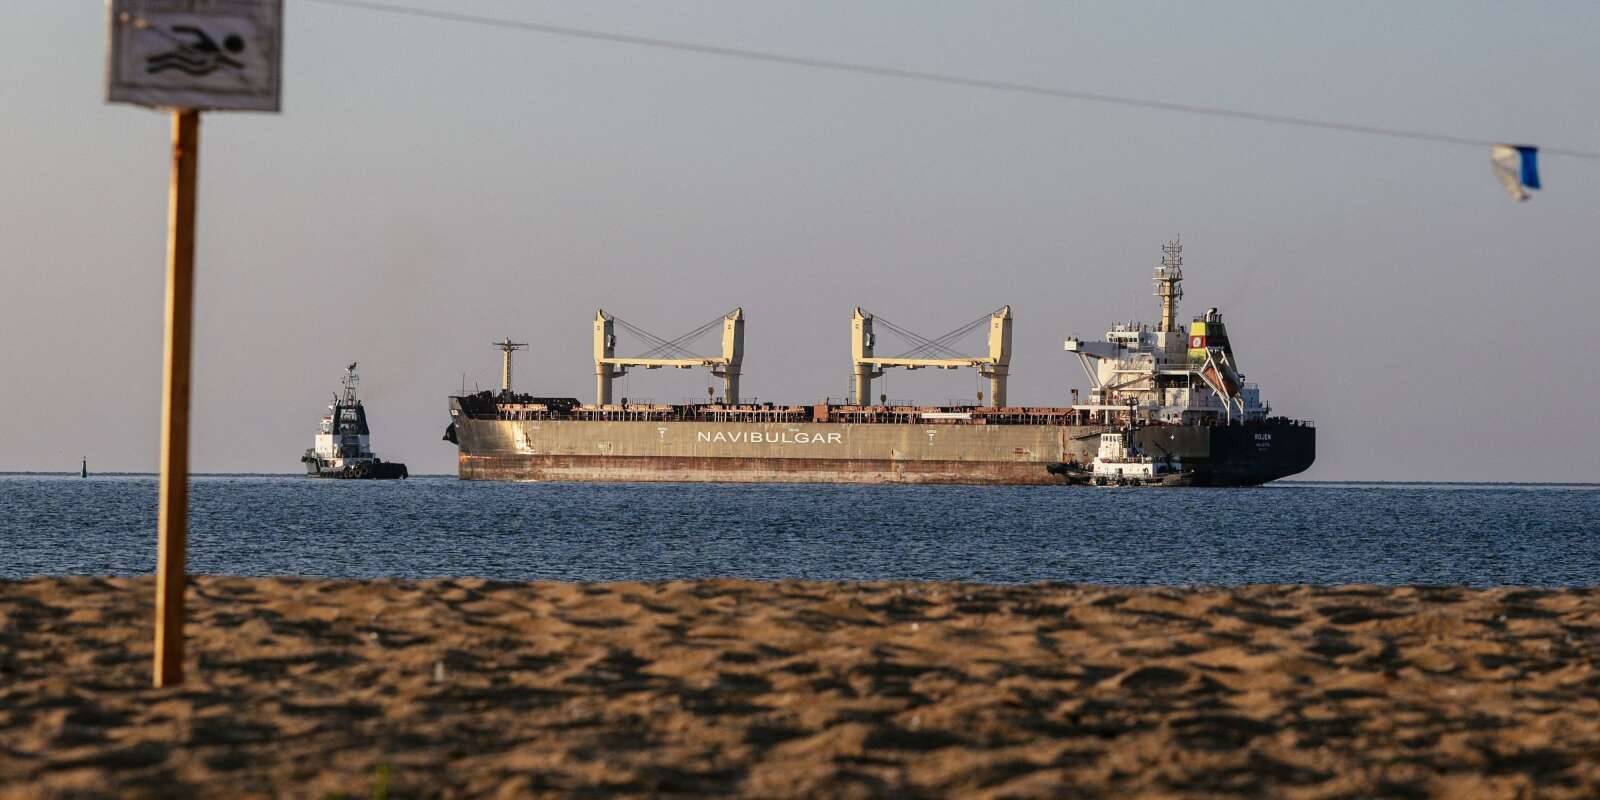 Un navire transportant des tonnes de maïs quitte le port ukrainien de Tchornomorsk, pour rejoindre Teesport au Royaume-Uni, le 5 août 2022.